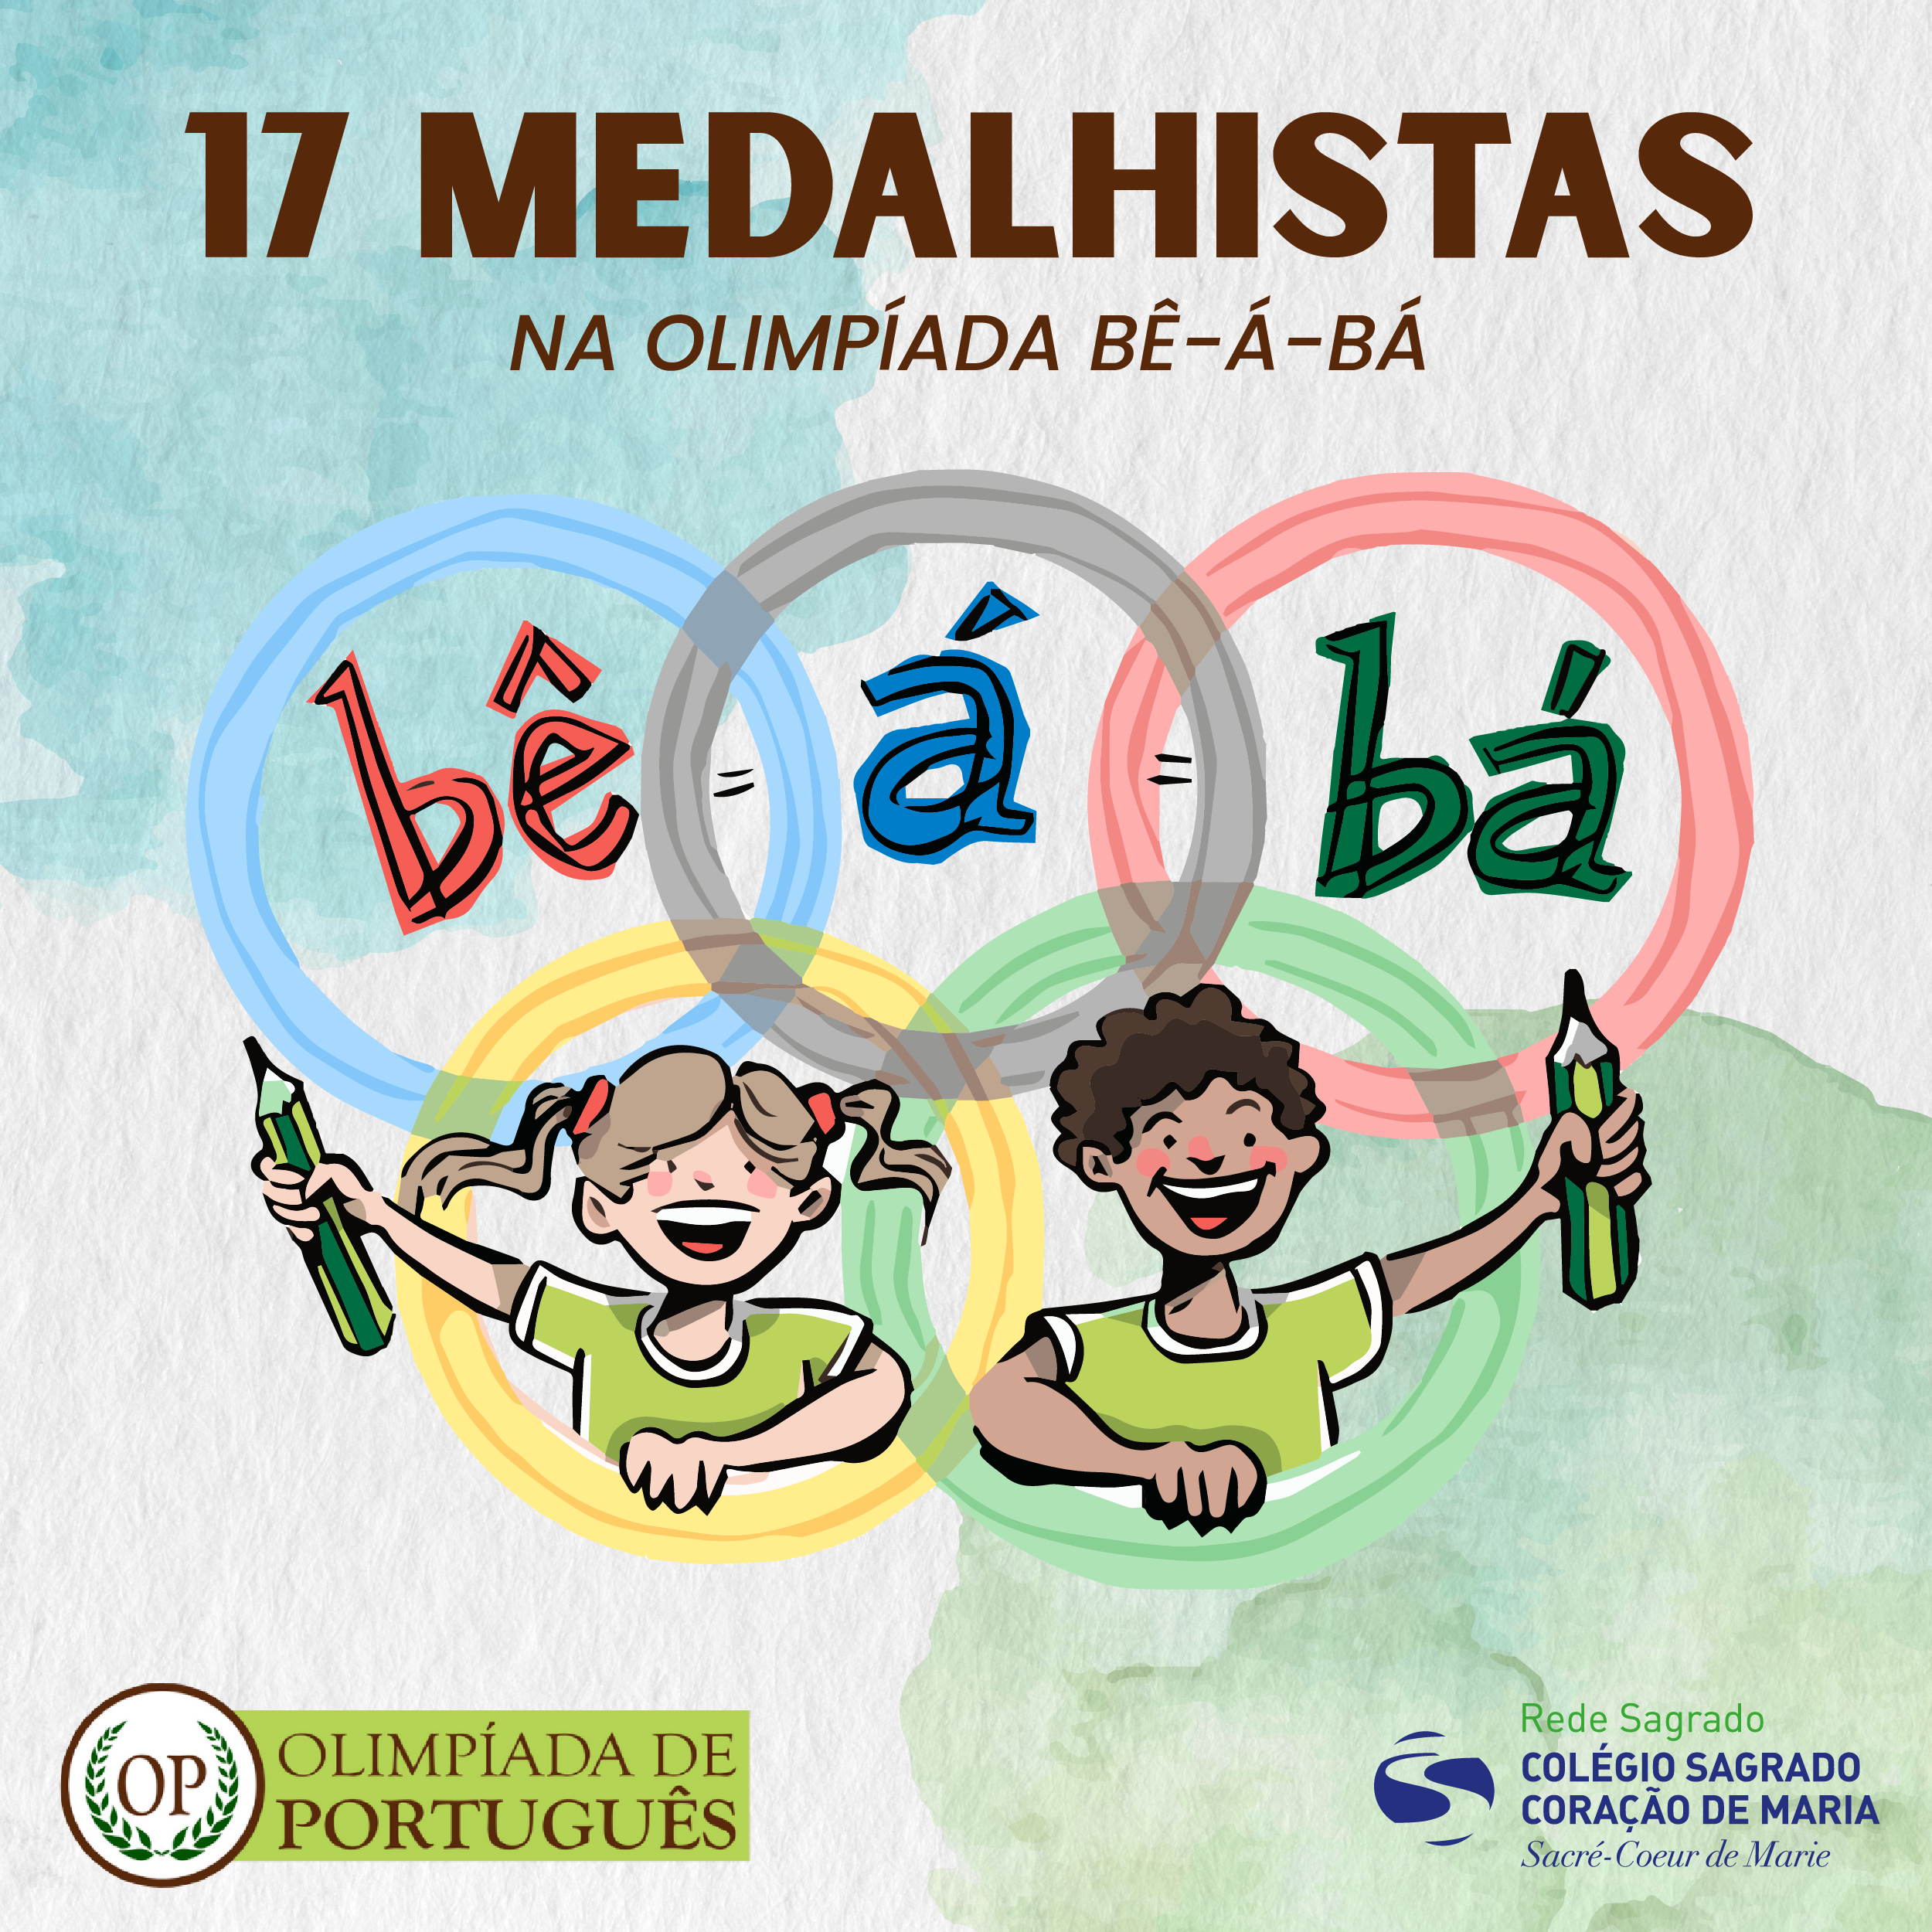 Alunos do CSCM-Rio conquistam 17 medalhas na Olimpíada Bê-á-bá